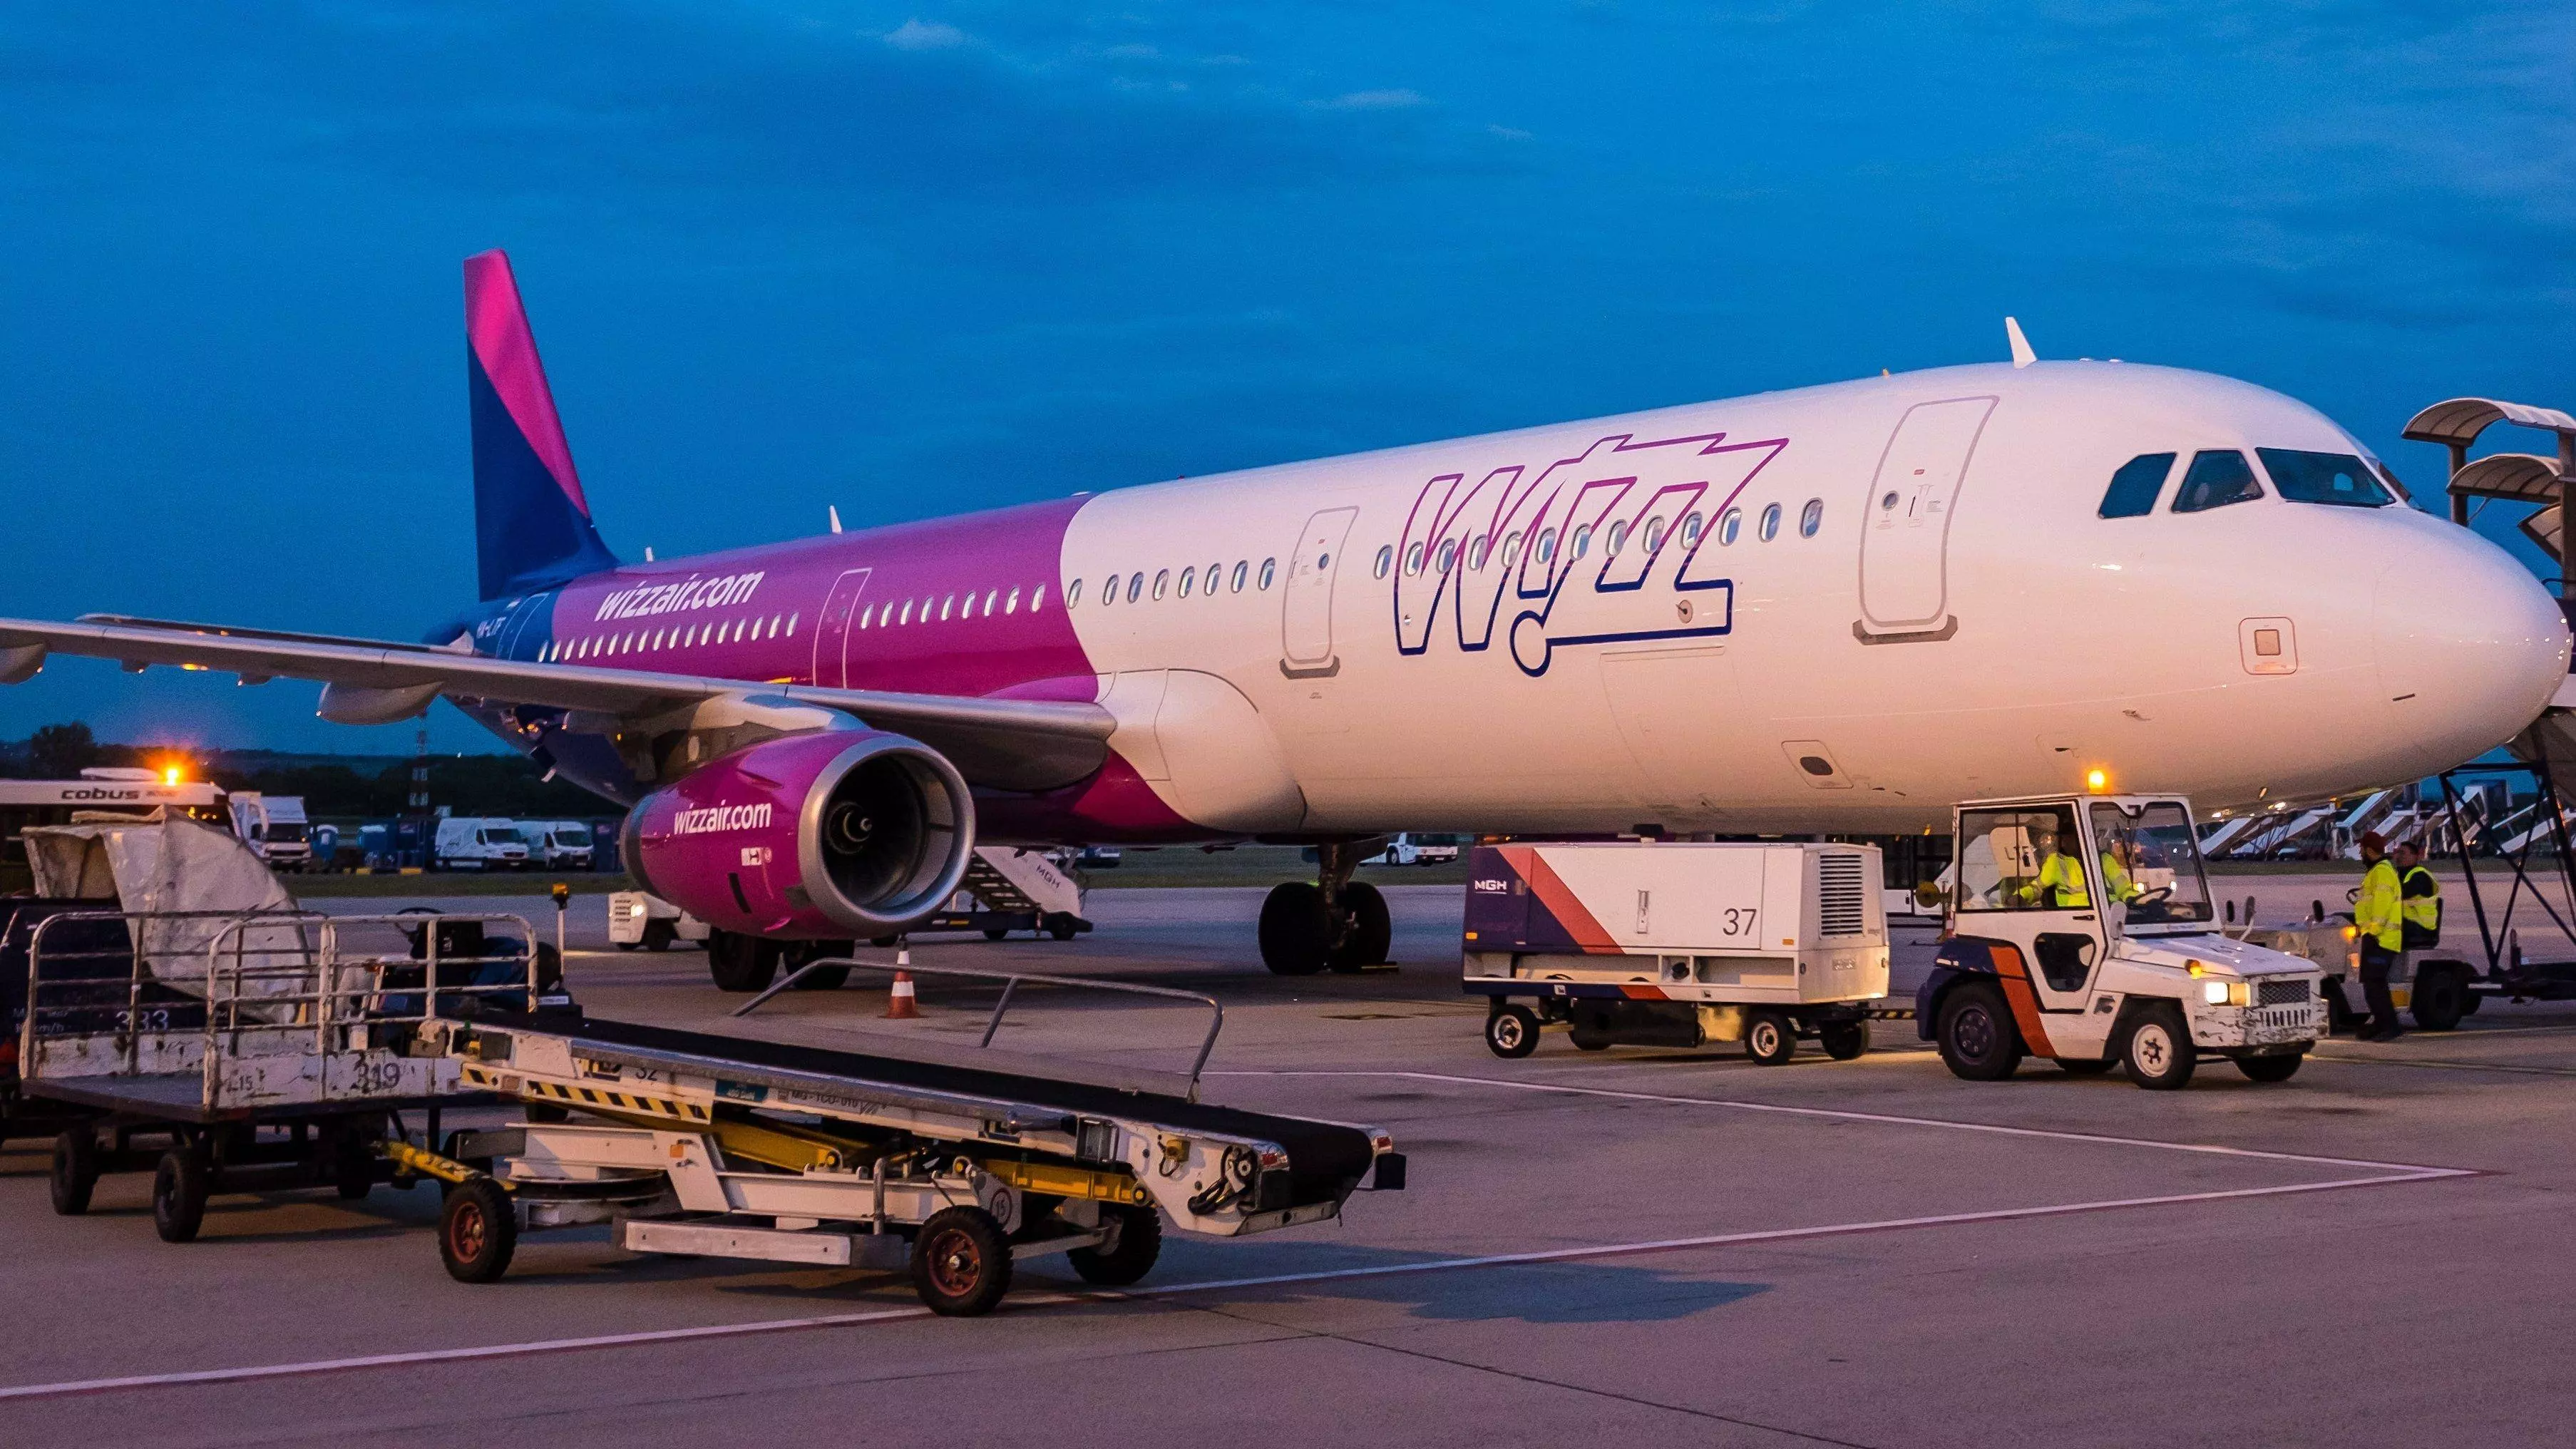 Авиакомпания wizz air – перспективный венгерский лоукостер